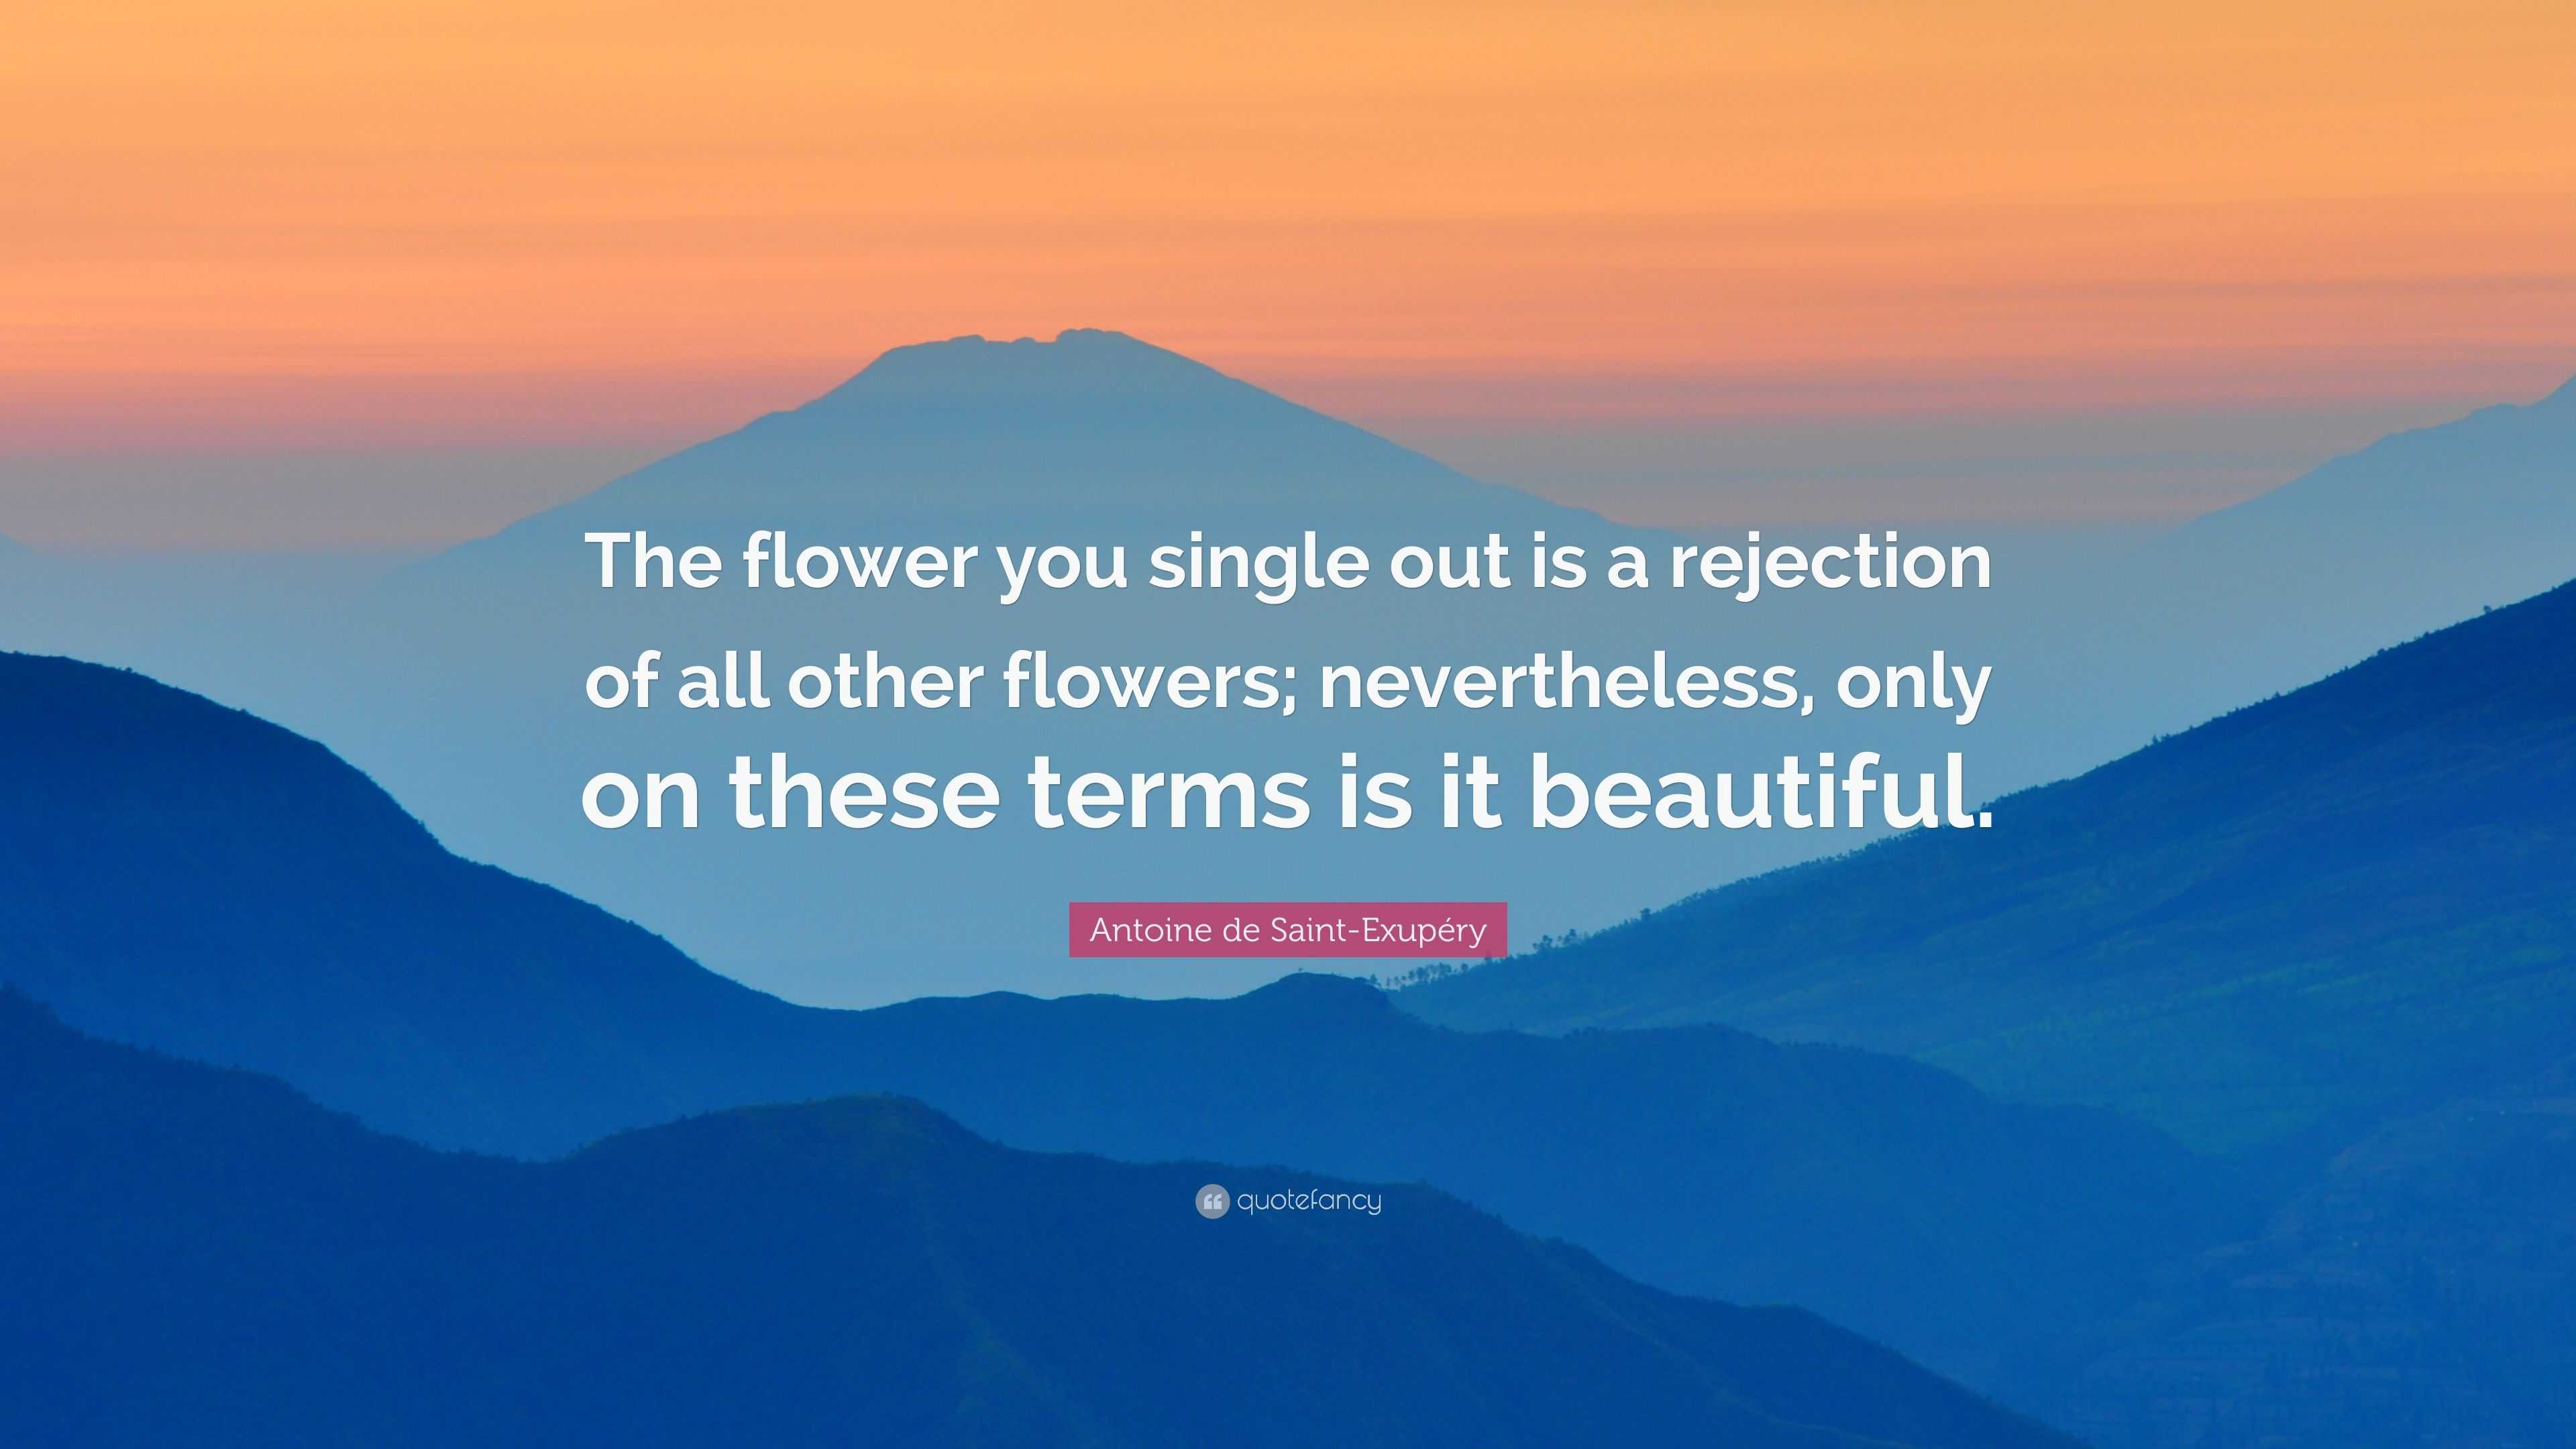 Antoine de Saint-Exupéry Quote: “The flower you single out is a ...